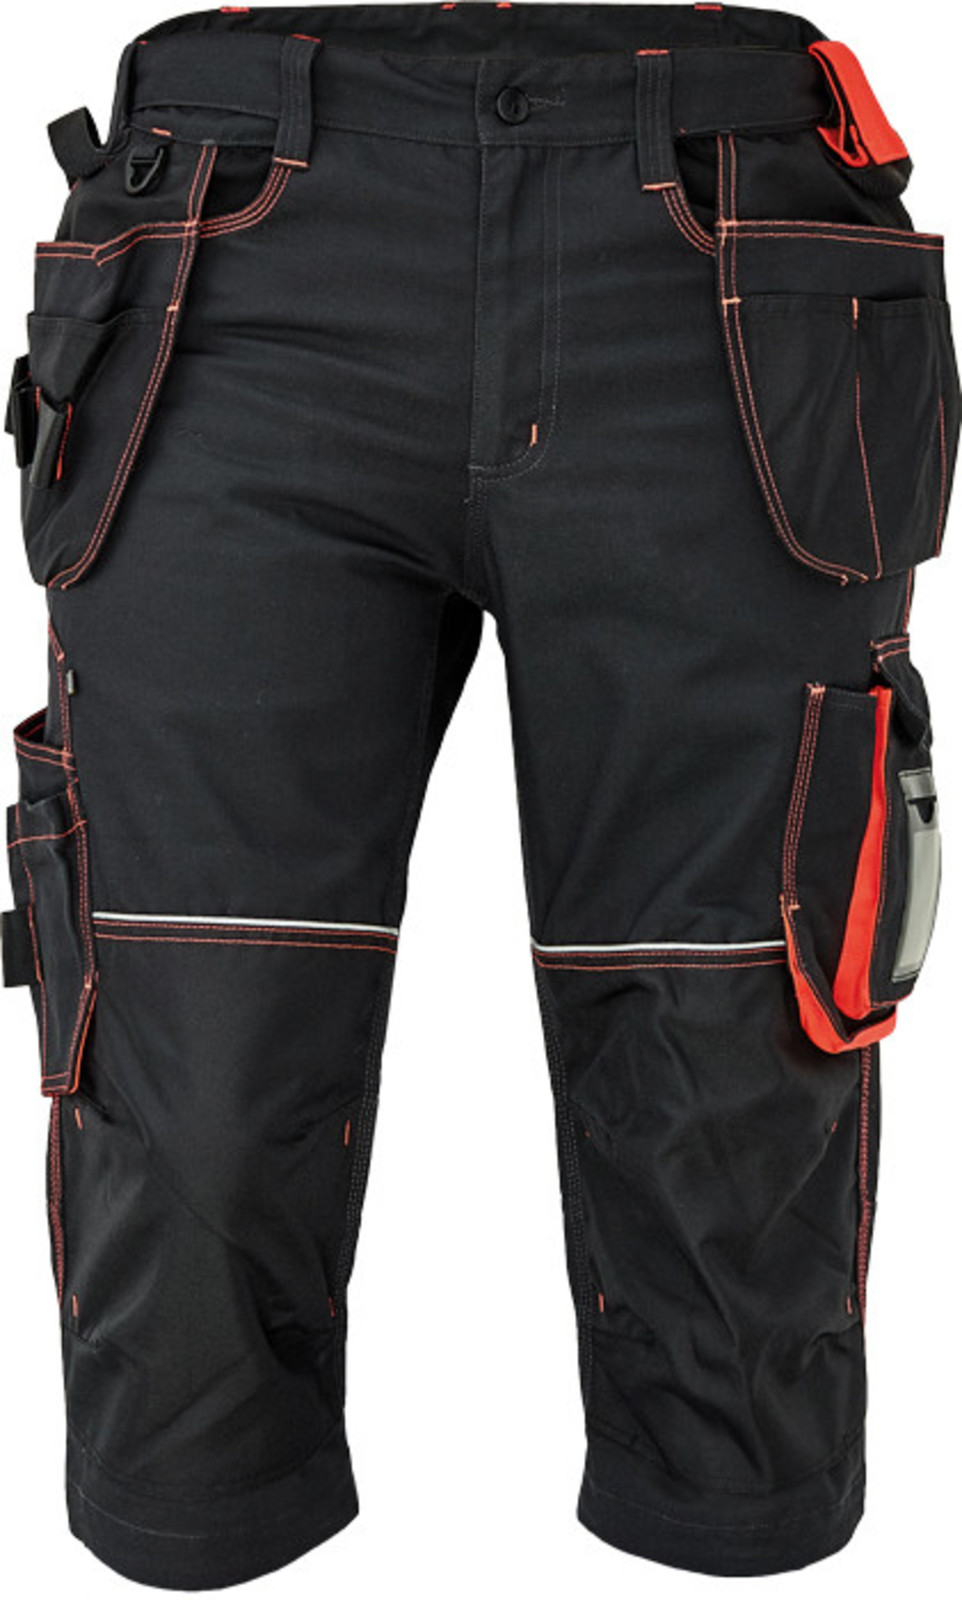 Pánske pracovné 3/4 nohavice Cerva Knoxfield 320 - veľkosť: 50, farba: antracit/červená